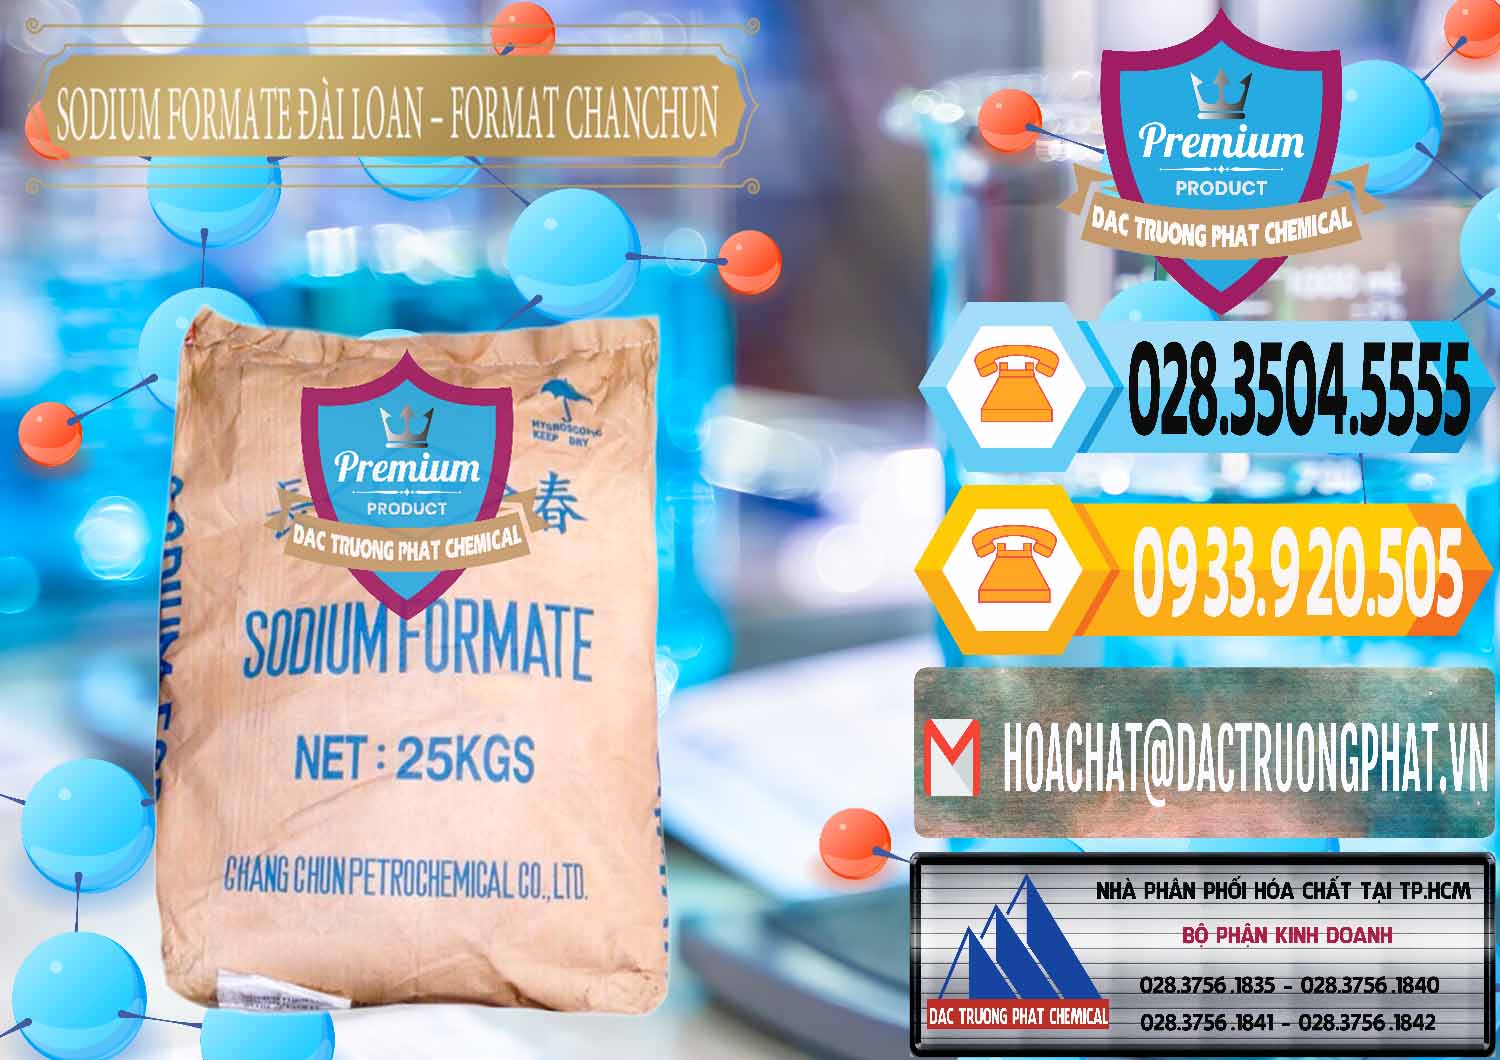 Chuyên nhập khẩu - bán Sodium Formate - Natri Format Đài Loan Taiwan - 0141 - Nhà nhập khẩu ( cung cấp ) hóa chất tại TP.HCM - hoachattayrua.net